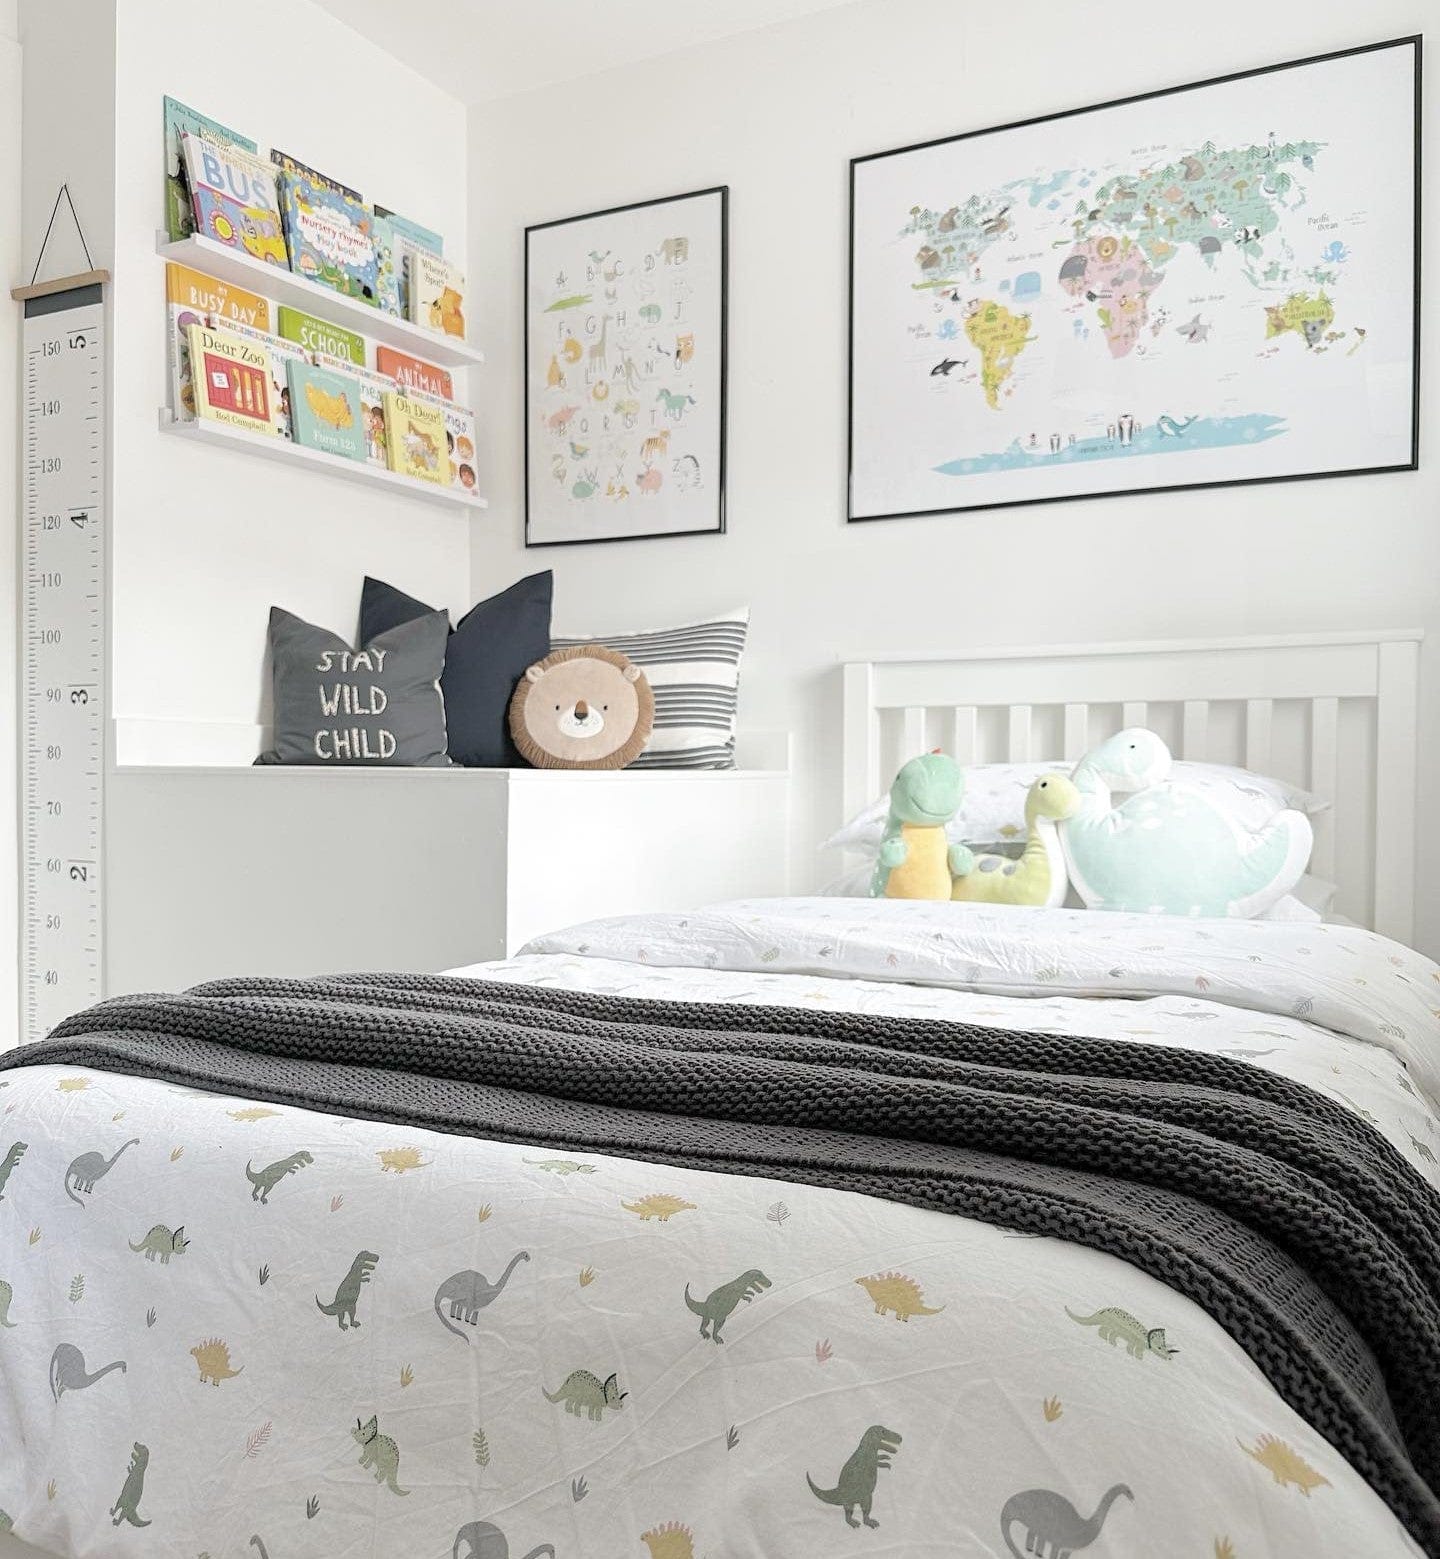 Kids Dinosaur Reversible Bed Linen Set - 100% Cotton - Multi/White - DUSK